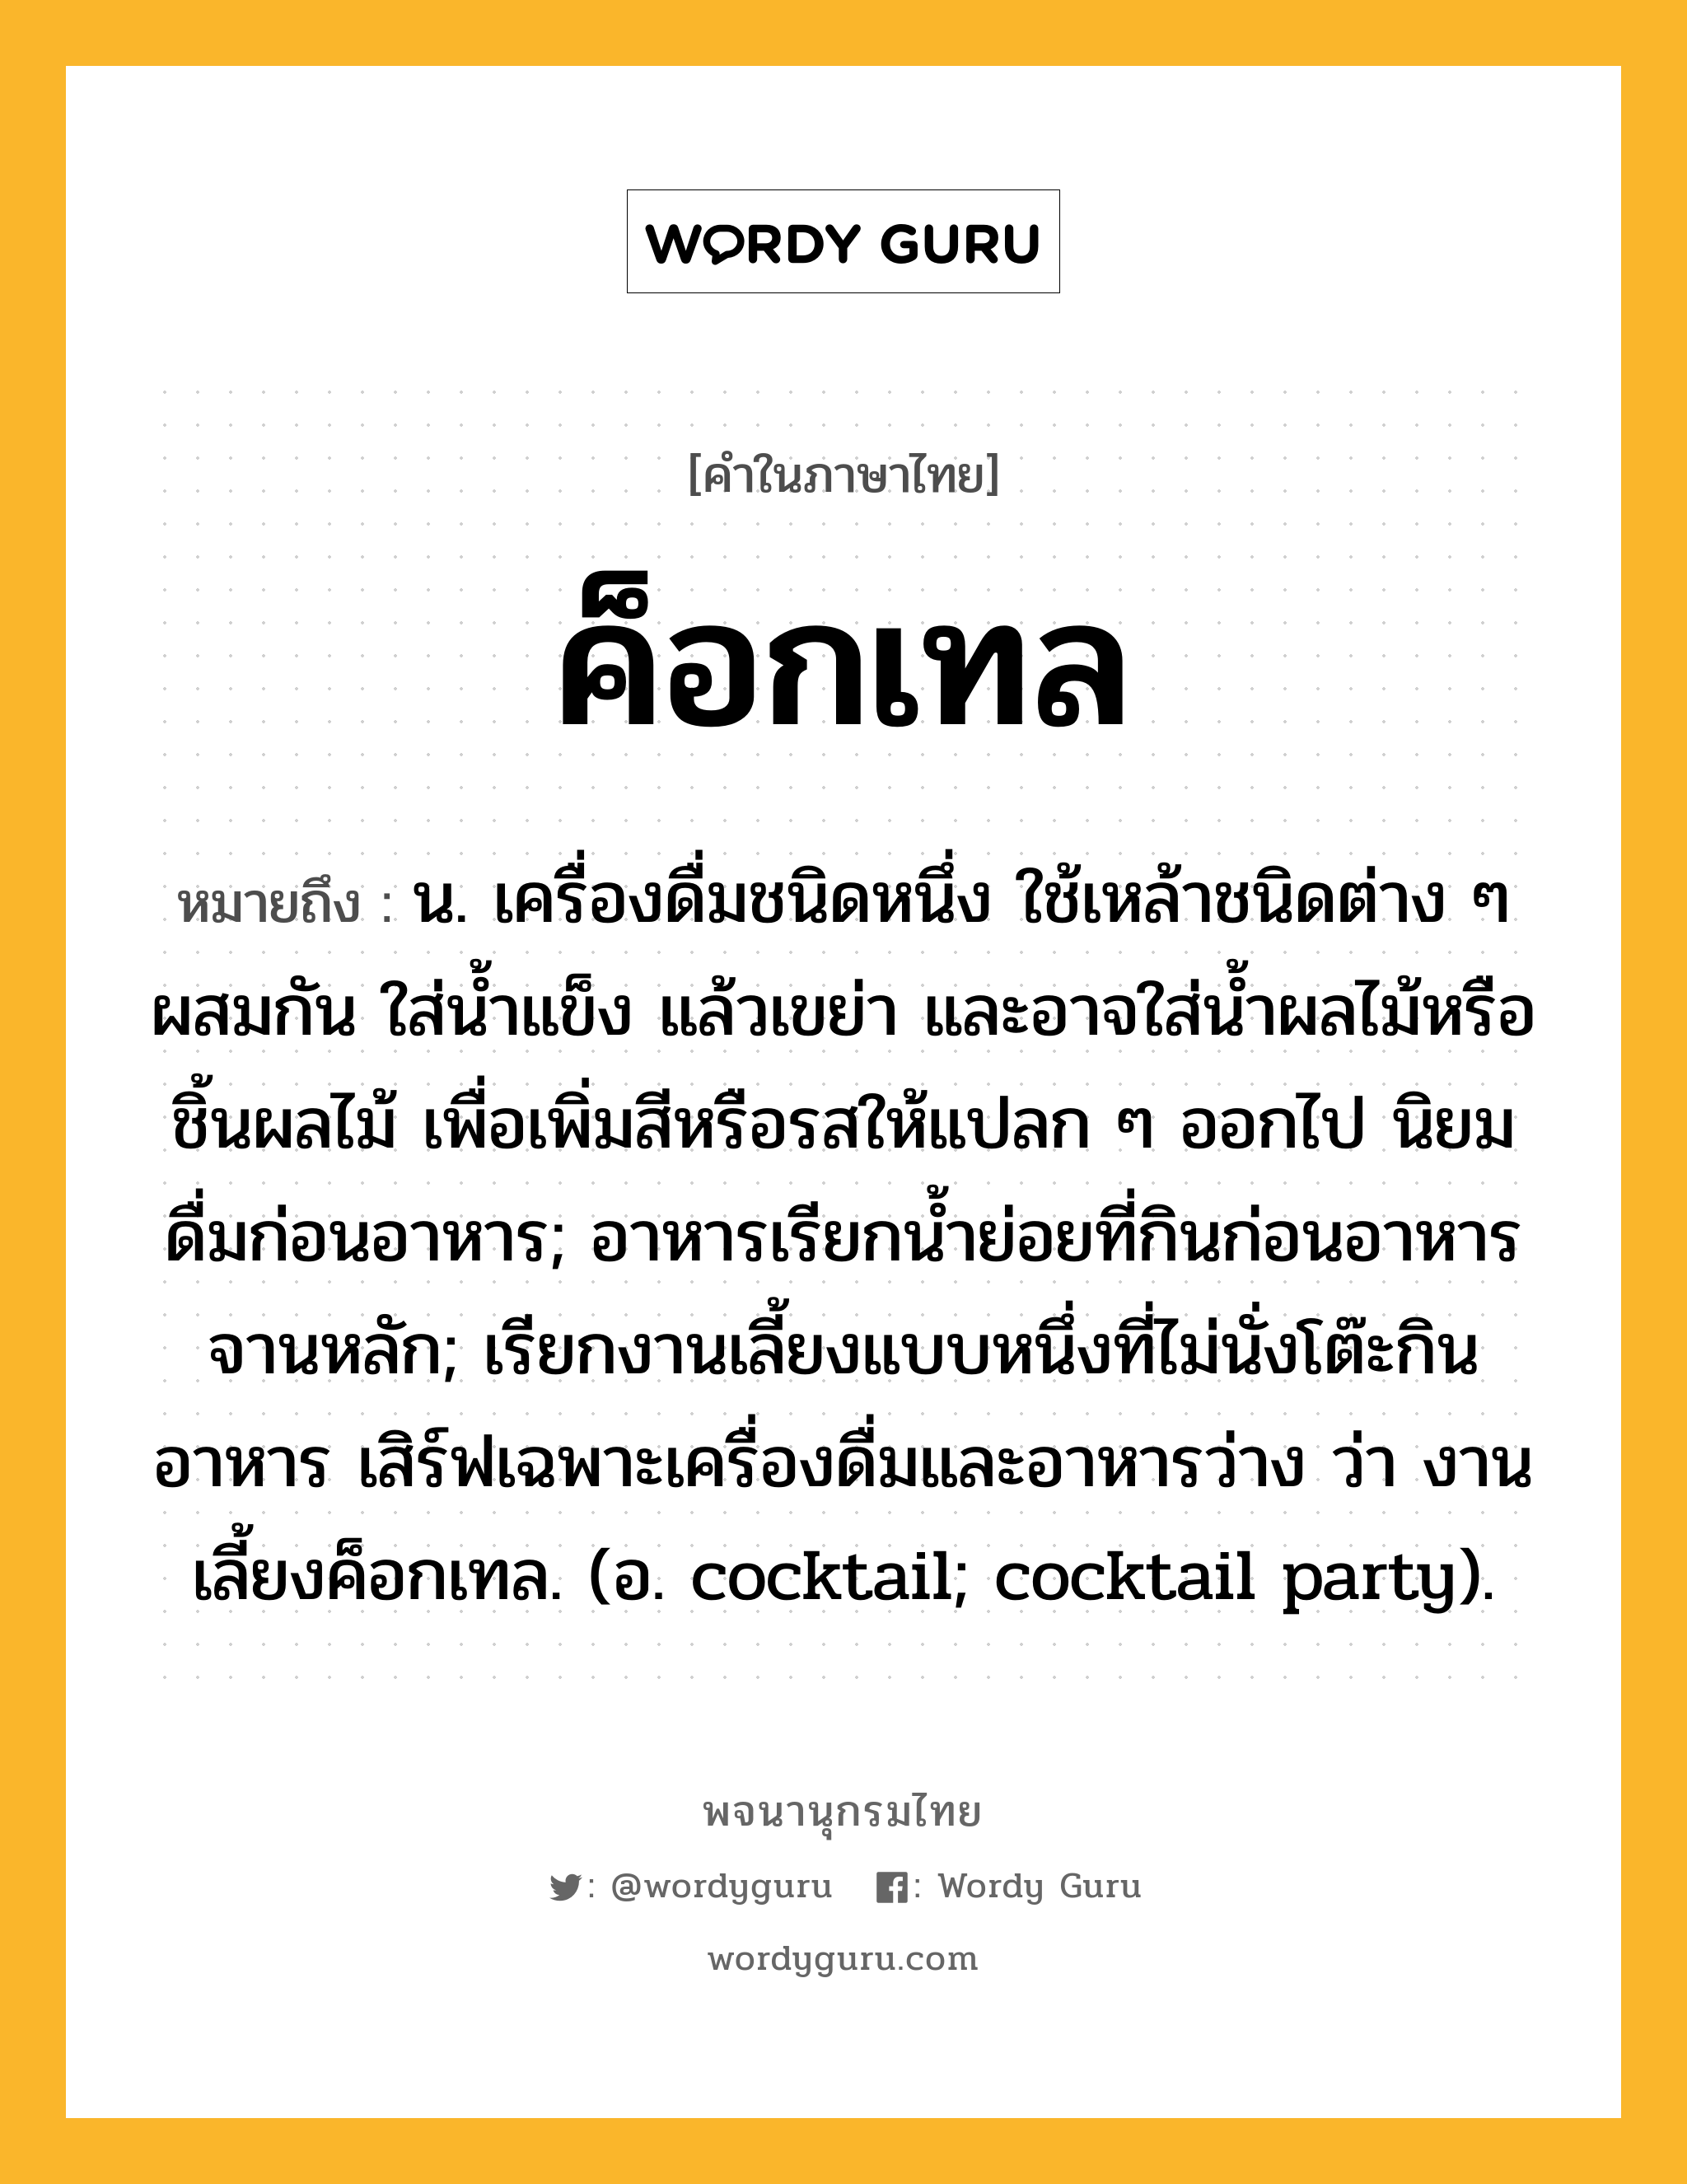 ค็อกเทล ความหมาย หมายถึงอะไร?, คำในภาษาไทย ค็อกเทล หมายถึง น. เครื่องดื่มชนิดหนึ่ง ใช้เหล้าชนิดต่าง ๆ ผสมกัน ใส่นํ้าแข็ง แล้วเขย่า และอาจใส่นํ้าผลไม้หรือชิ้นผลไม้ เพื่อเพิ่มสีหรือรสให้แปลก ๆ ออกไป นิยมดื่มก่อนอาหาร; อาหารเรียกน้ำย่อยที่กินก่อนอาหารจานหลัก; เรียกงานเลี้ยงแบบหนึ่งที่ไม่นั่งโต๊ะกินอาหาร เสิร์ฟเฉพาะเครื่องดื่มและอาหารว่าง ว่า งานเลี้ยงค็อกเทล. (อ. cocktail; cocktail party).